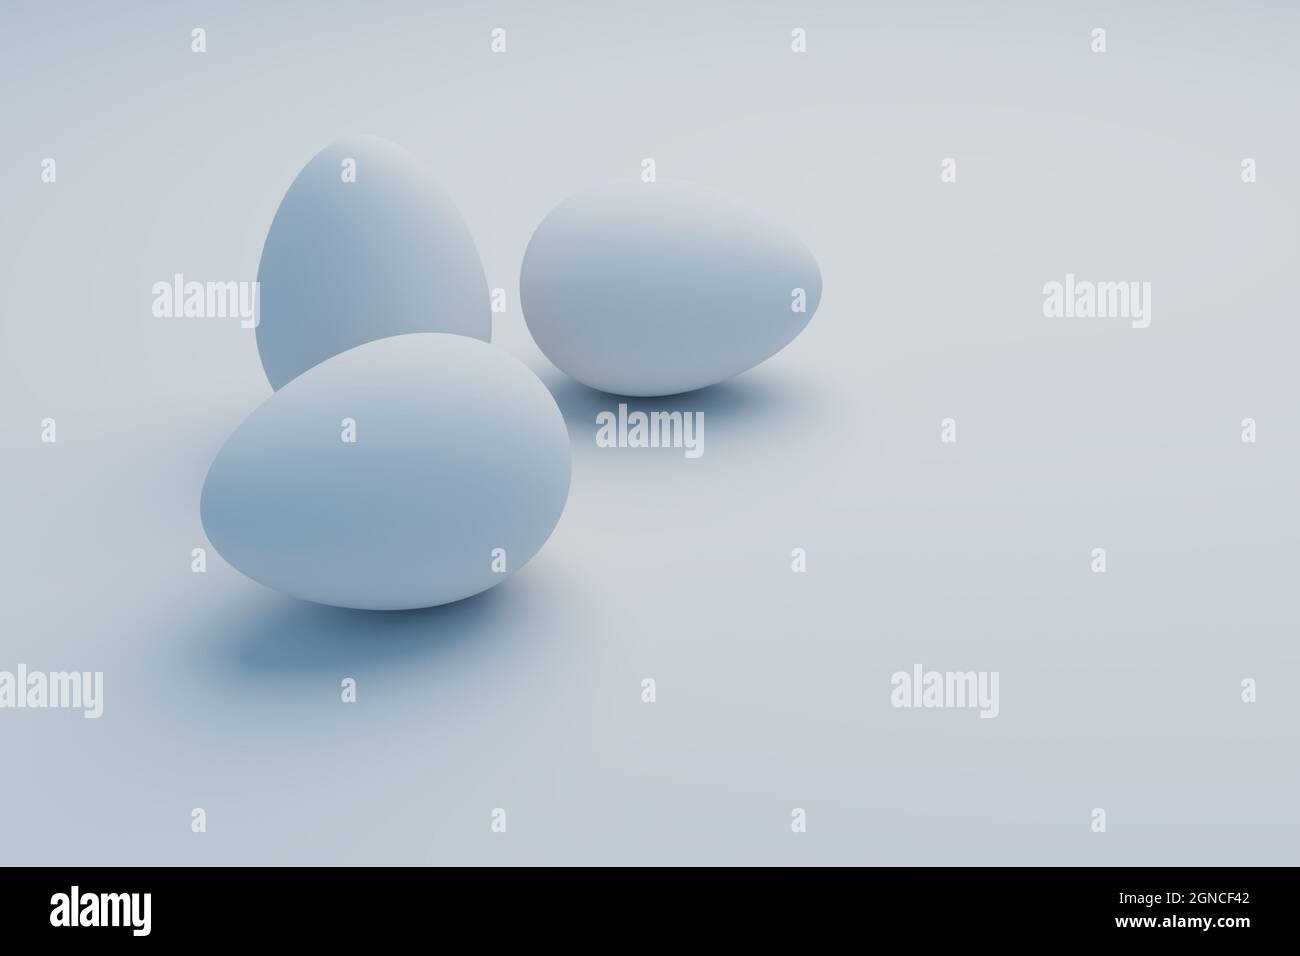 white egg on white background, 3d illustration rendering Stock Photo